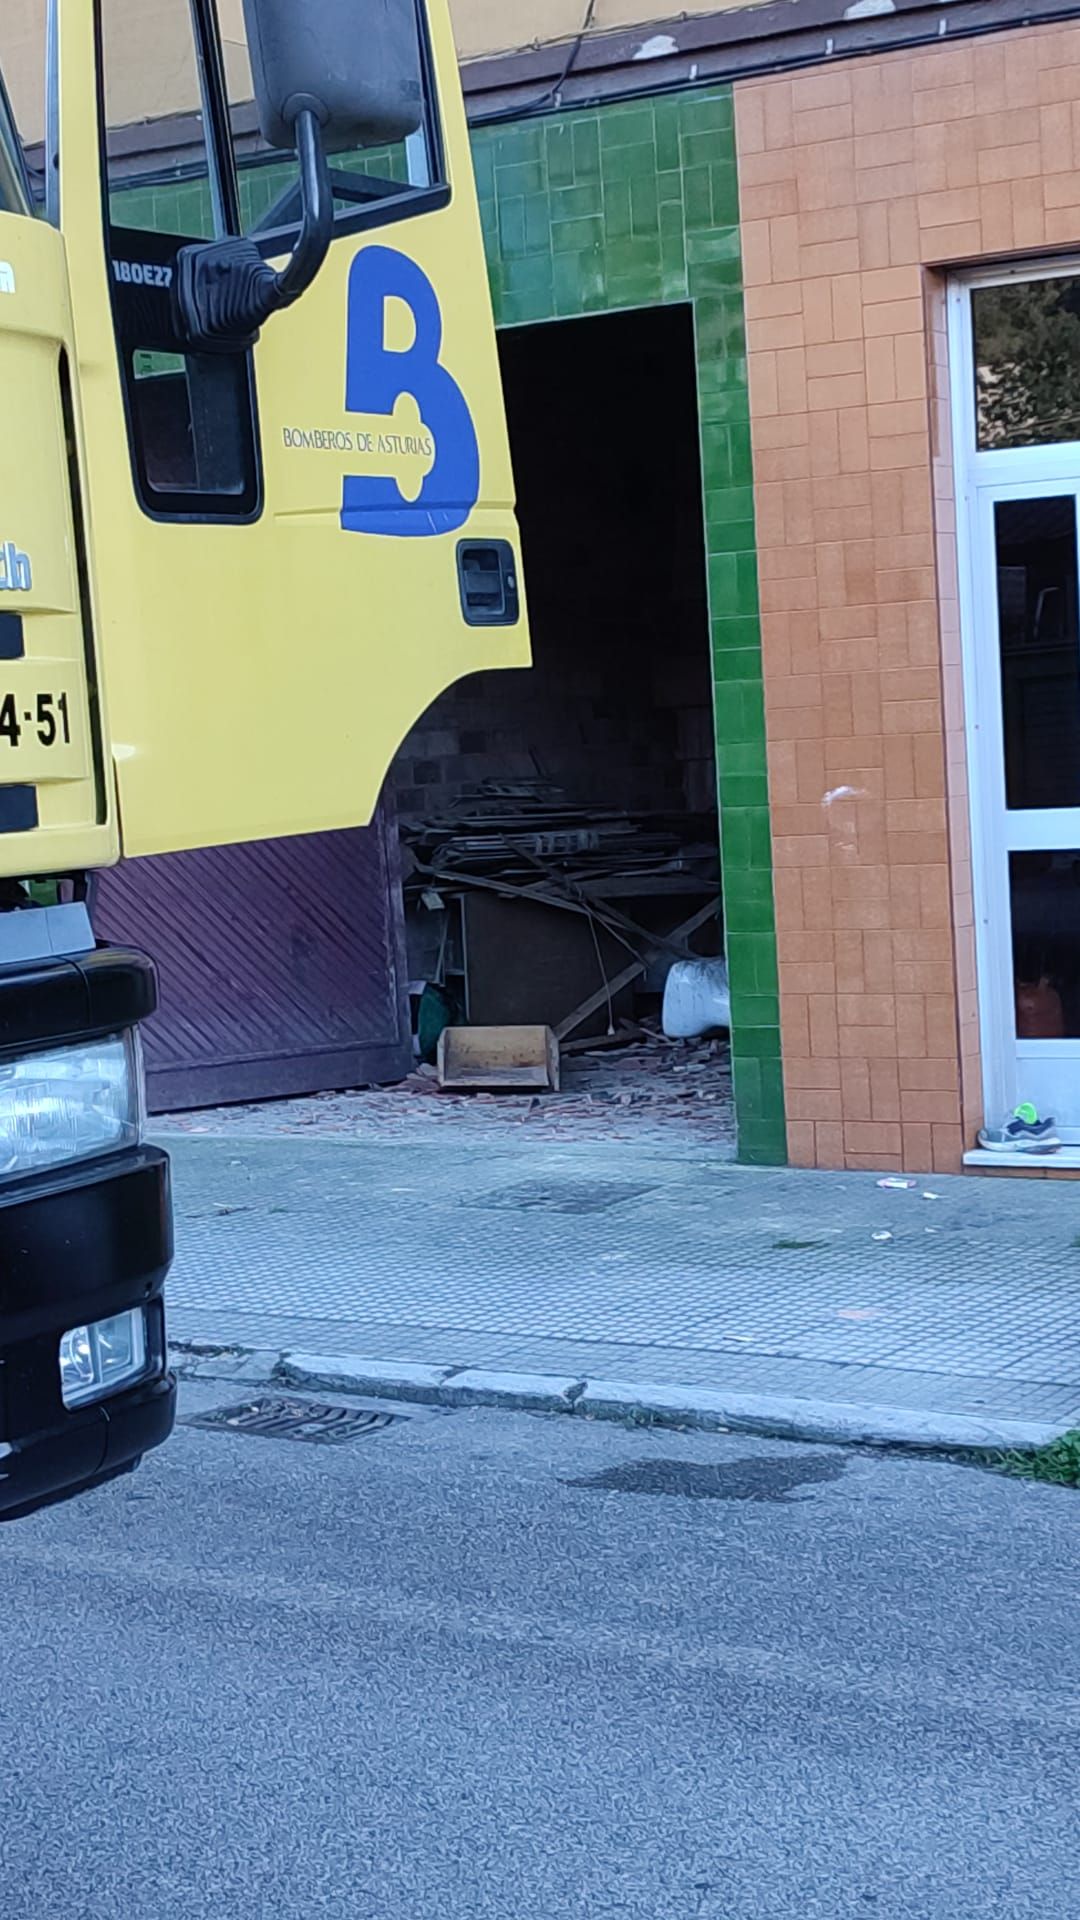 Susto en Langreo: dos heridos al derrumbarse parte del primer piso de una vivienda en Ciaño